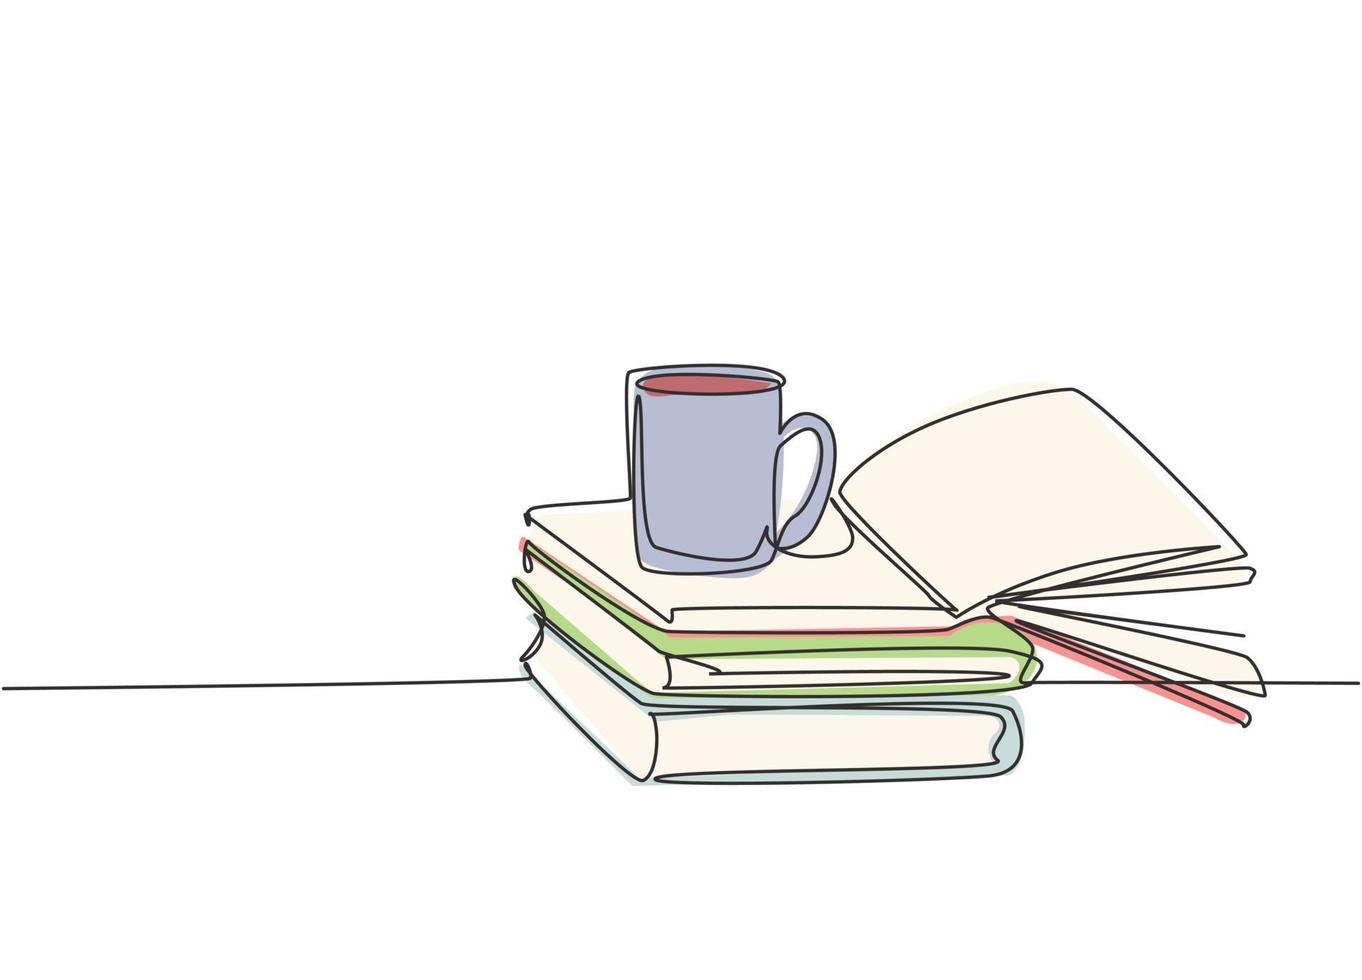 enkele doorlopende lijntekening van stapel boeken met een mok koffie erboven op bibliotheekbureau. bedrijfs- en onderwijsconcept. een lijn tekenen grafisch ontwerp vectorillustratie vector